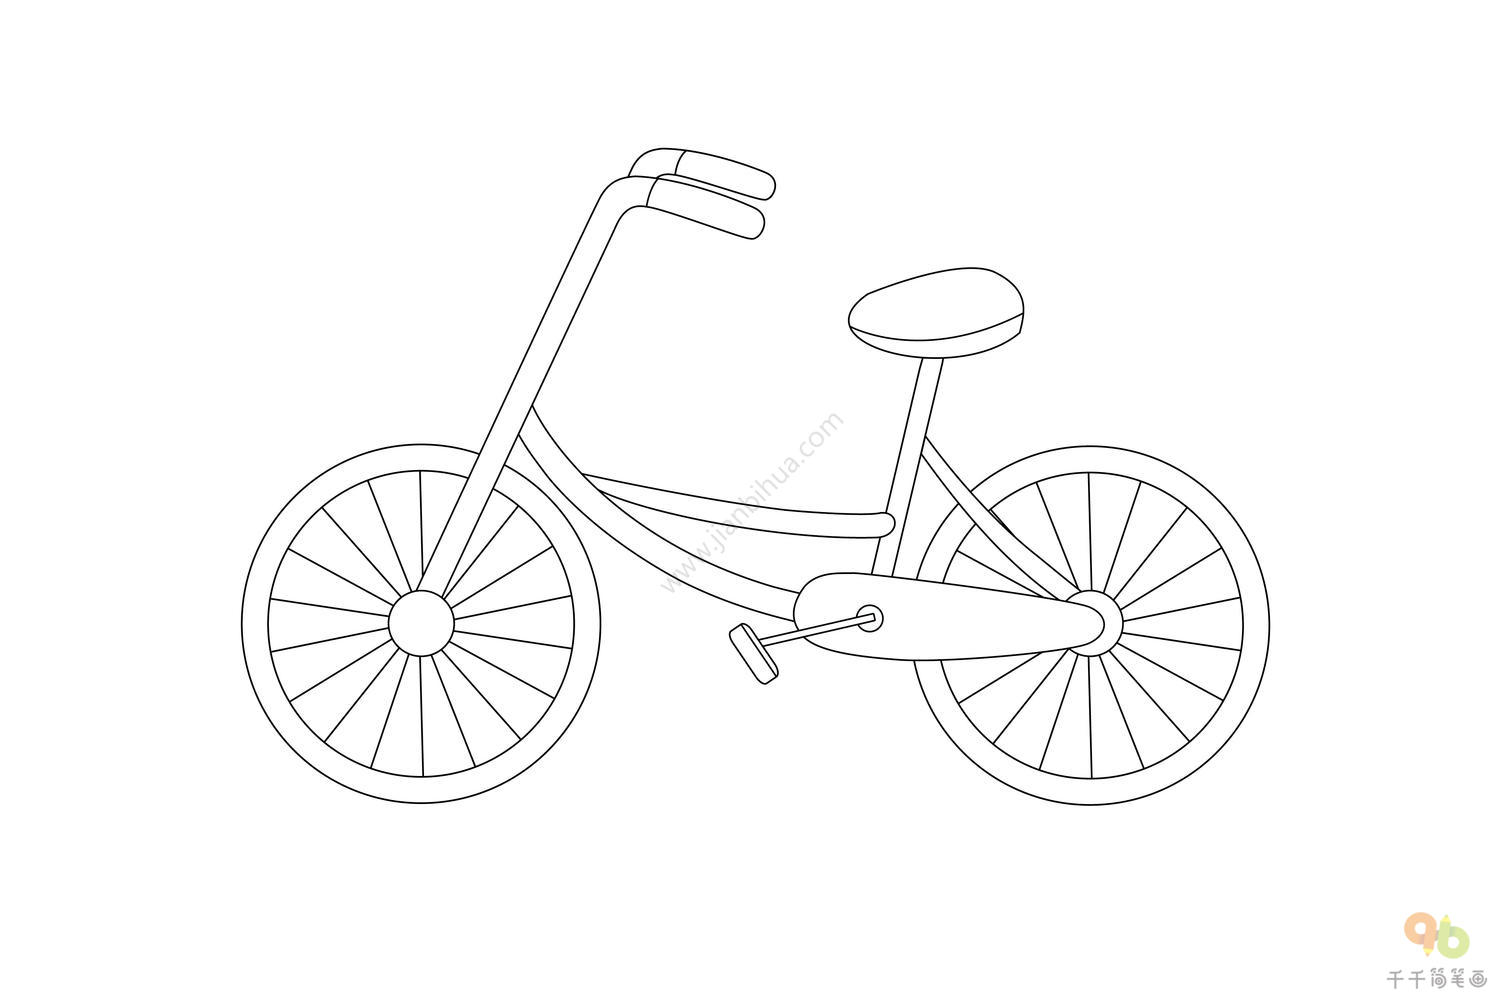 哈罗共享单车 / 哈罗单车 / 哈喽共享单车 用户体验设计改造-设计作品集-学犀牛中文网